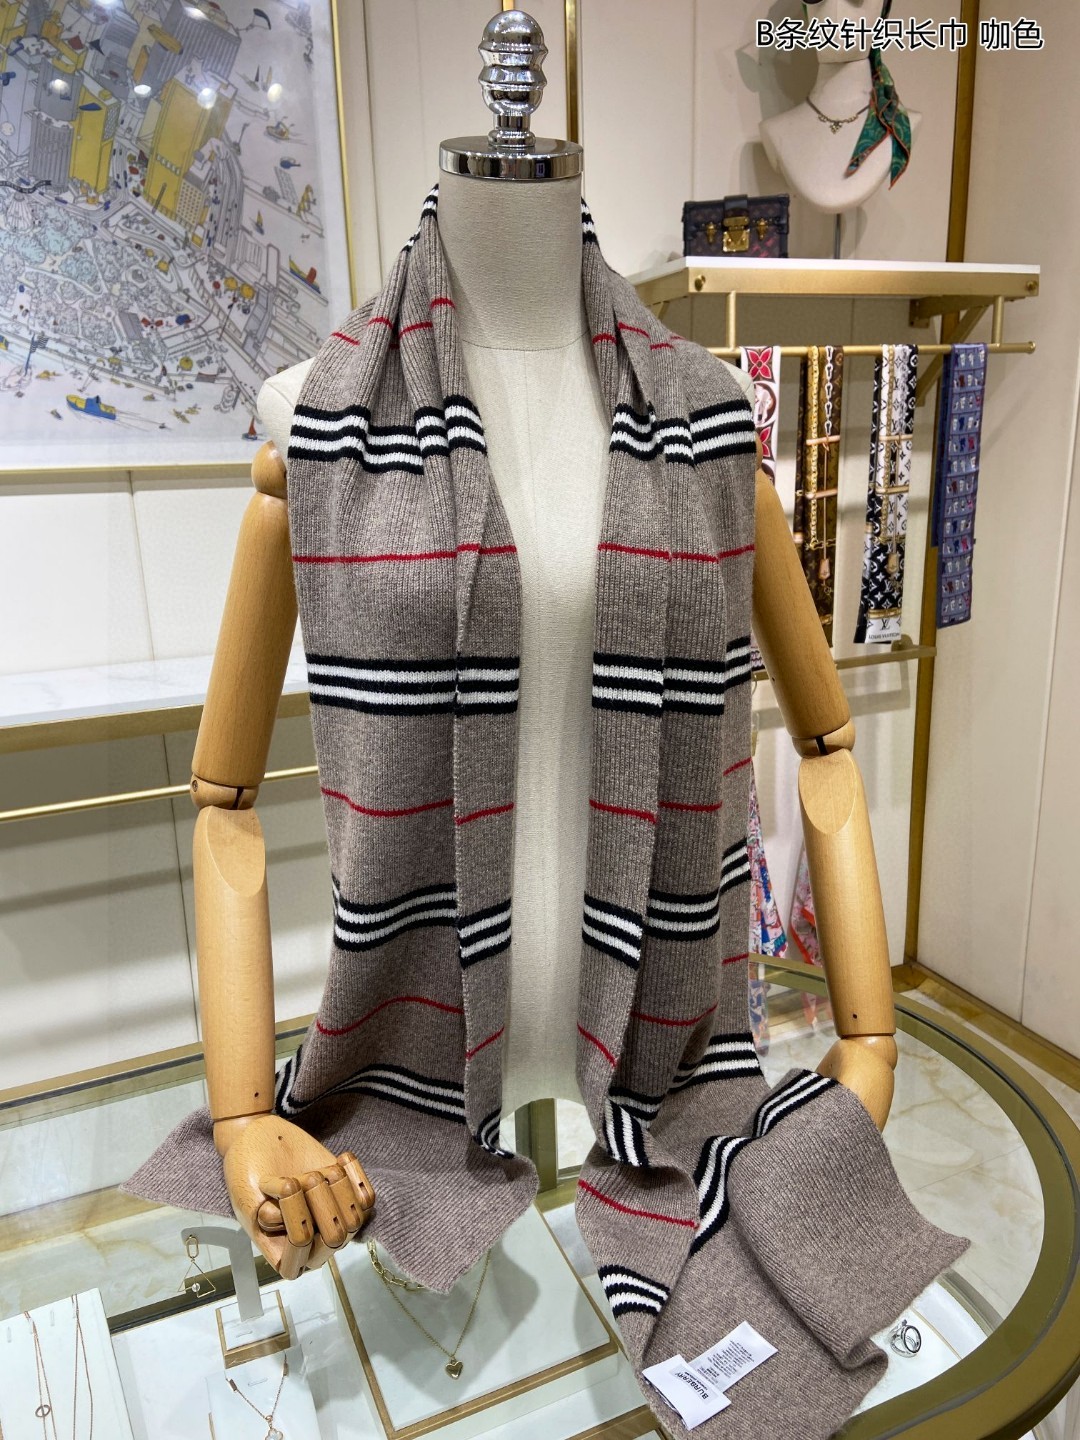 ️巴宝莉中性款B条纹针织长巾欧美范儿又是一款即时尚又实用的长围巾男女通用颜色搭配很协调100%纯羊绒手感